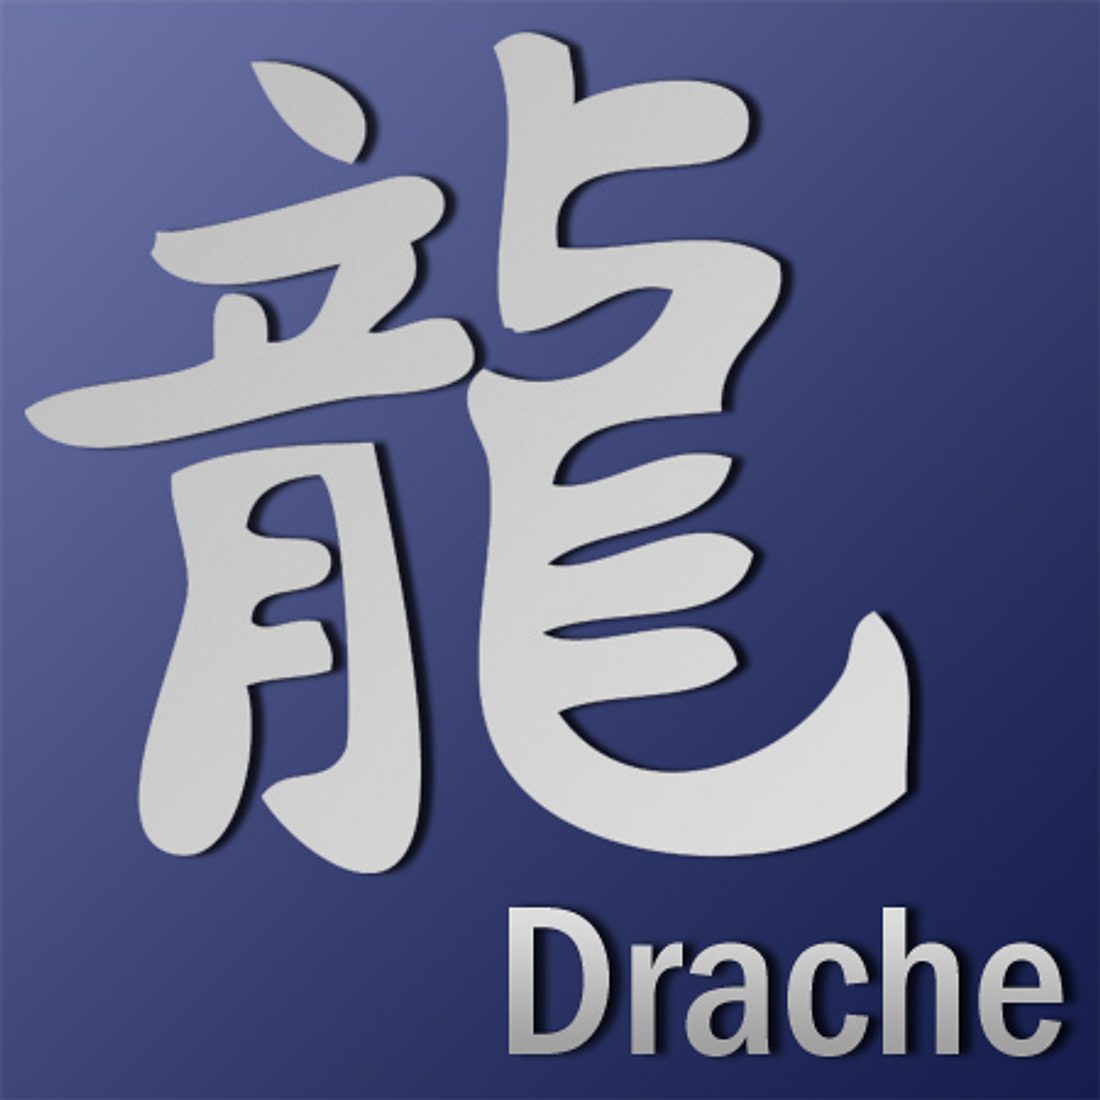 Ihr chinesisches Horoskop 2013 Drache Astrowoche